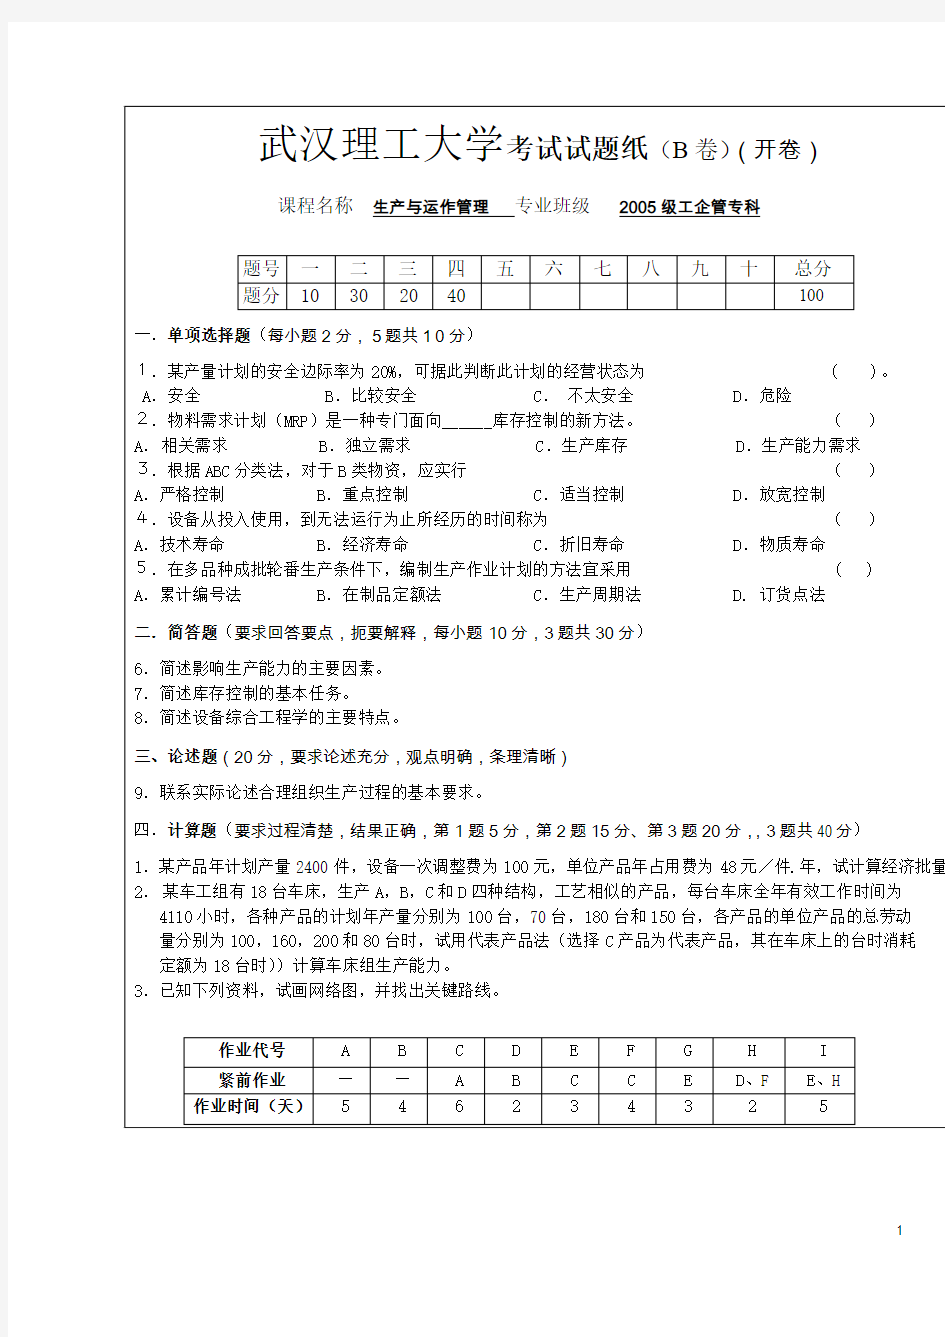 武汉理工大学考试试题纸(B卷)(开卷)教材